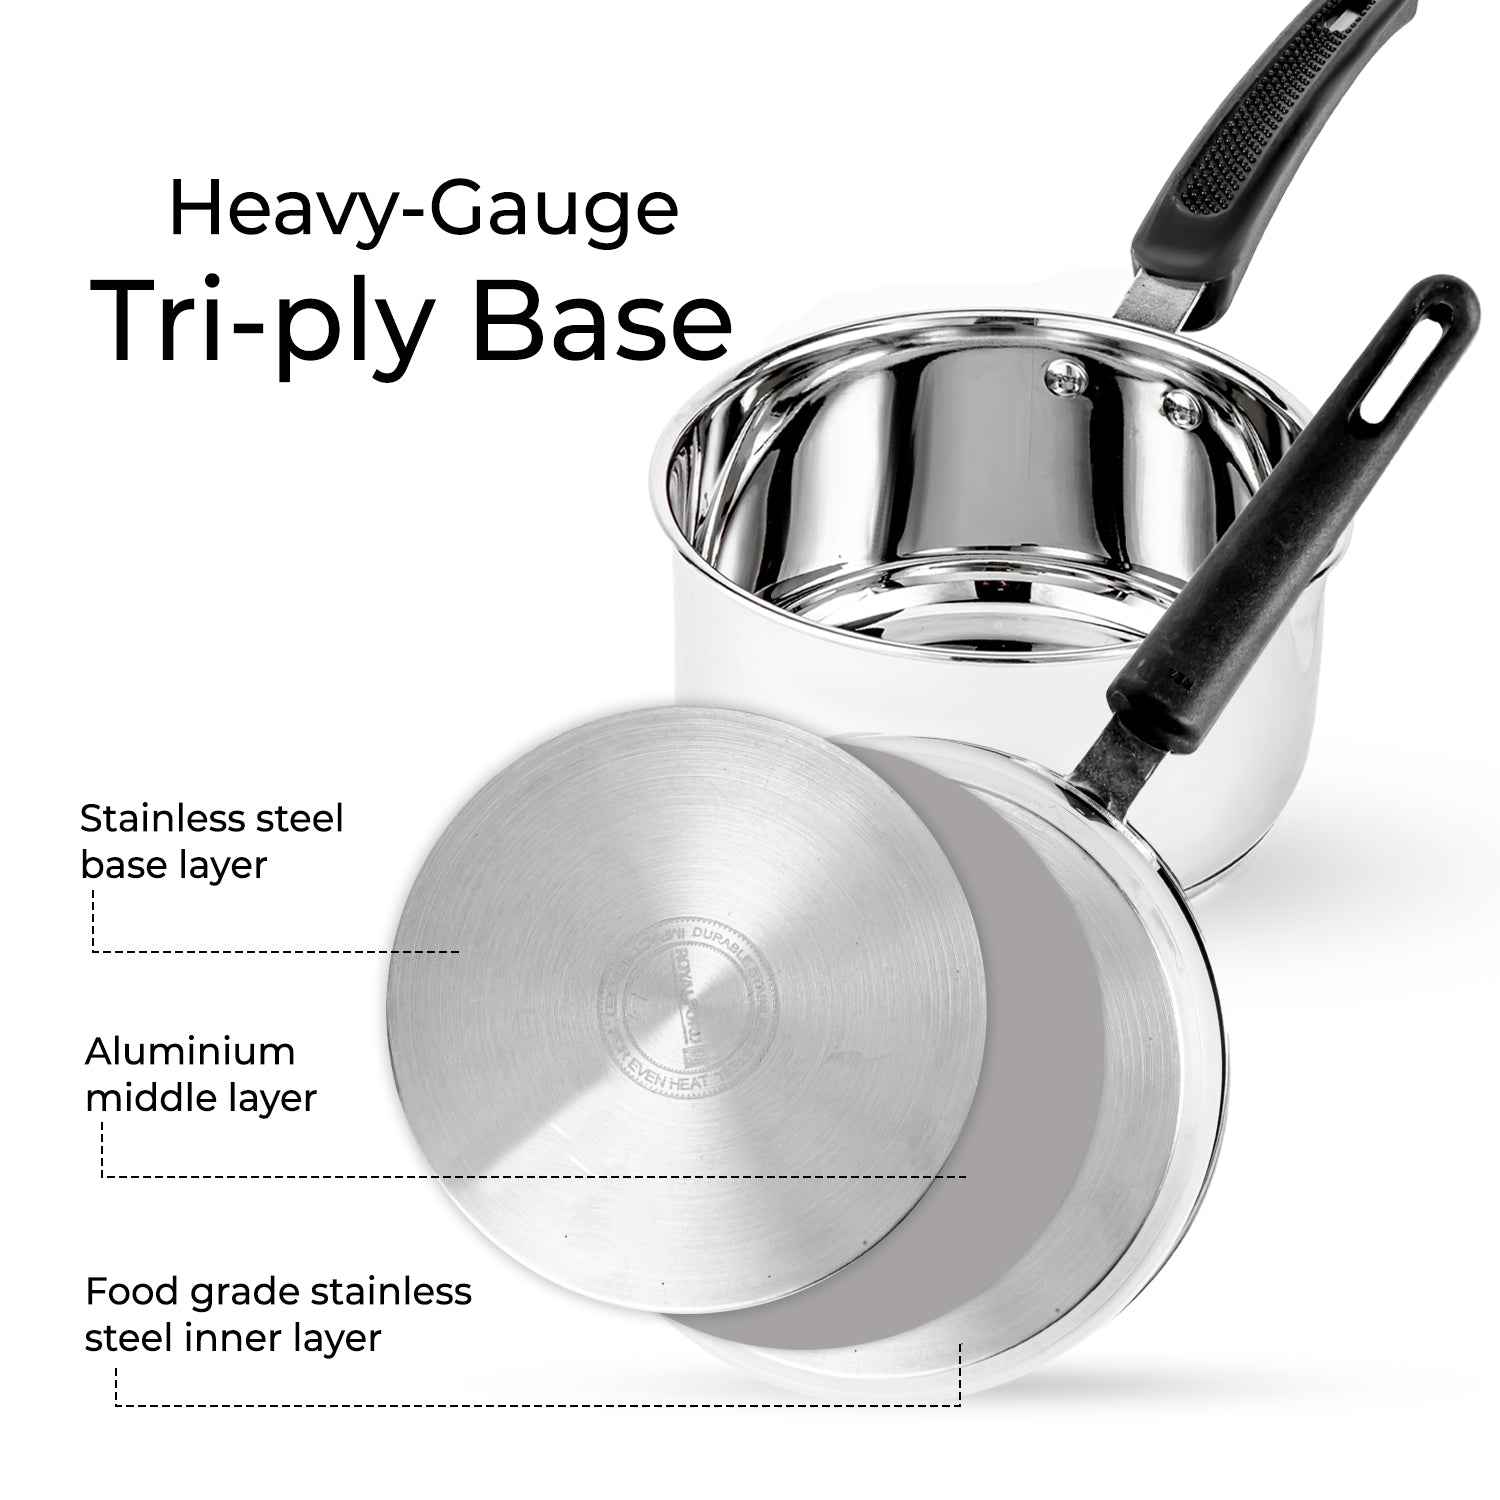 16cm Stainless Steel Heavy-Gauge Tri-Ply Saucepan